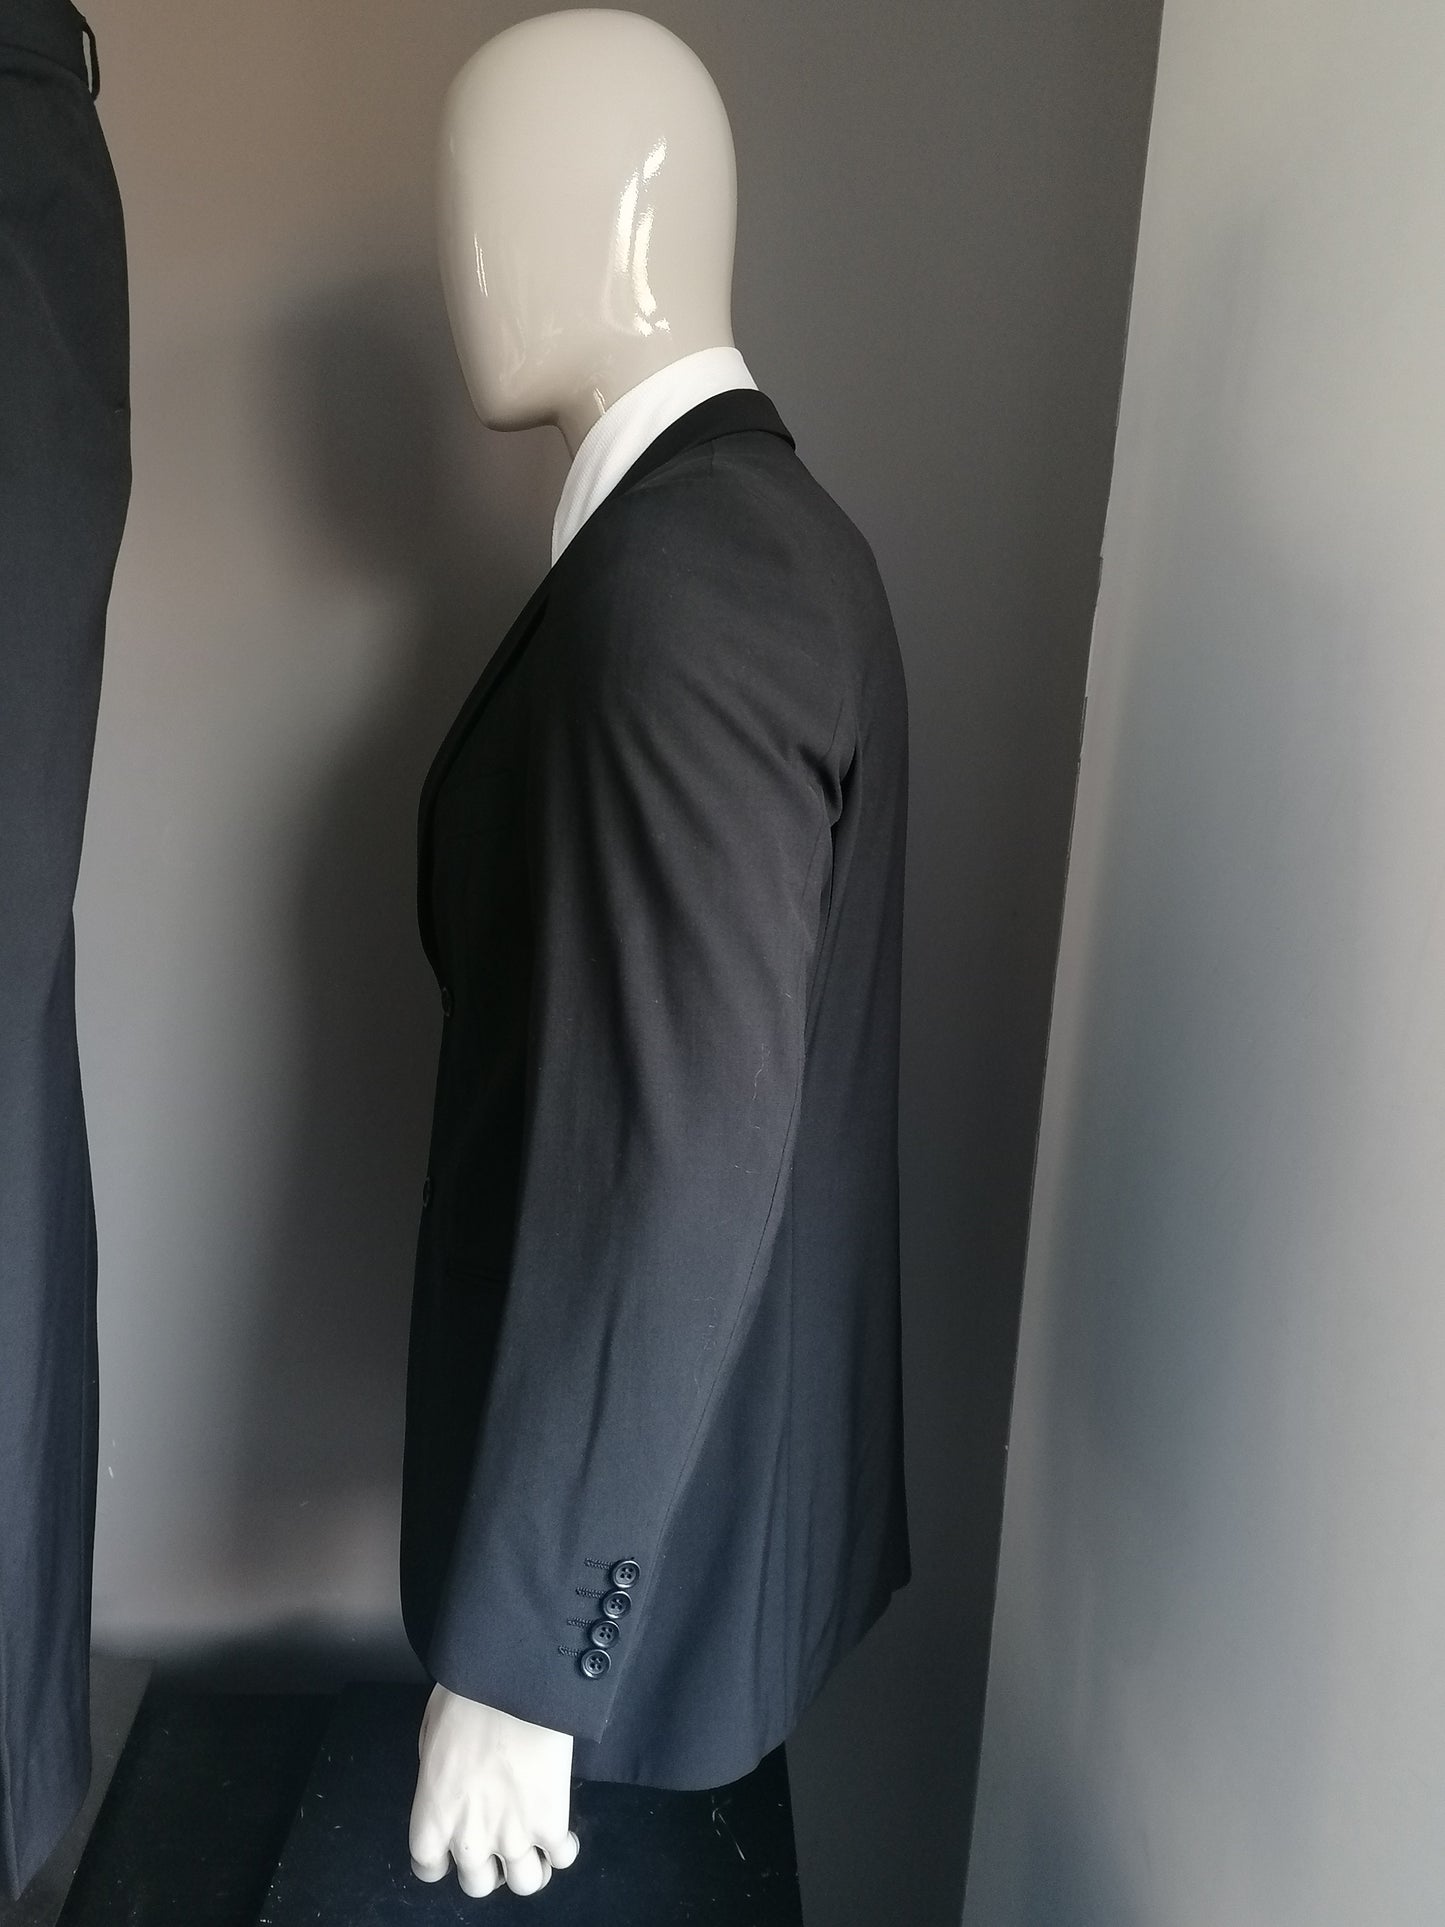 Costume di lana di Van Gils. Colore nero. Dimensione combinata: dimensione della giacca 50/m e pantaloni MT 54/L